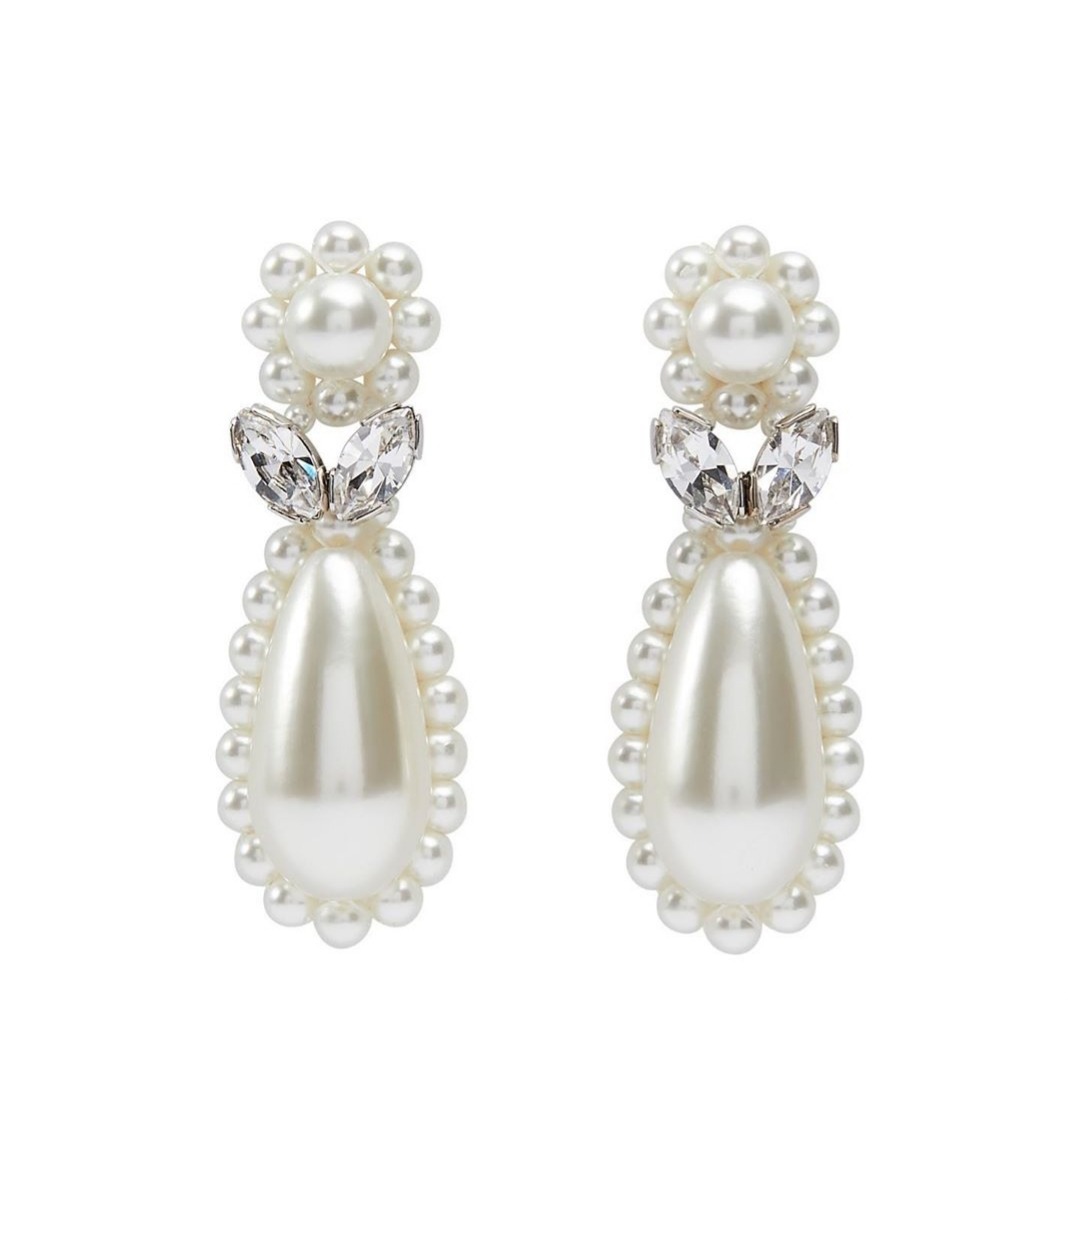 heavenly — Pearl earrings by Simone Rocha